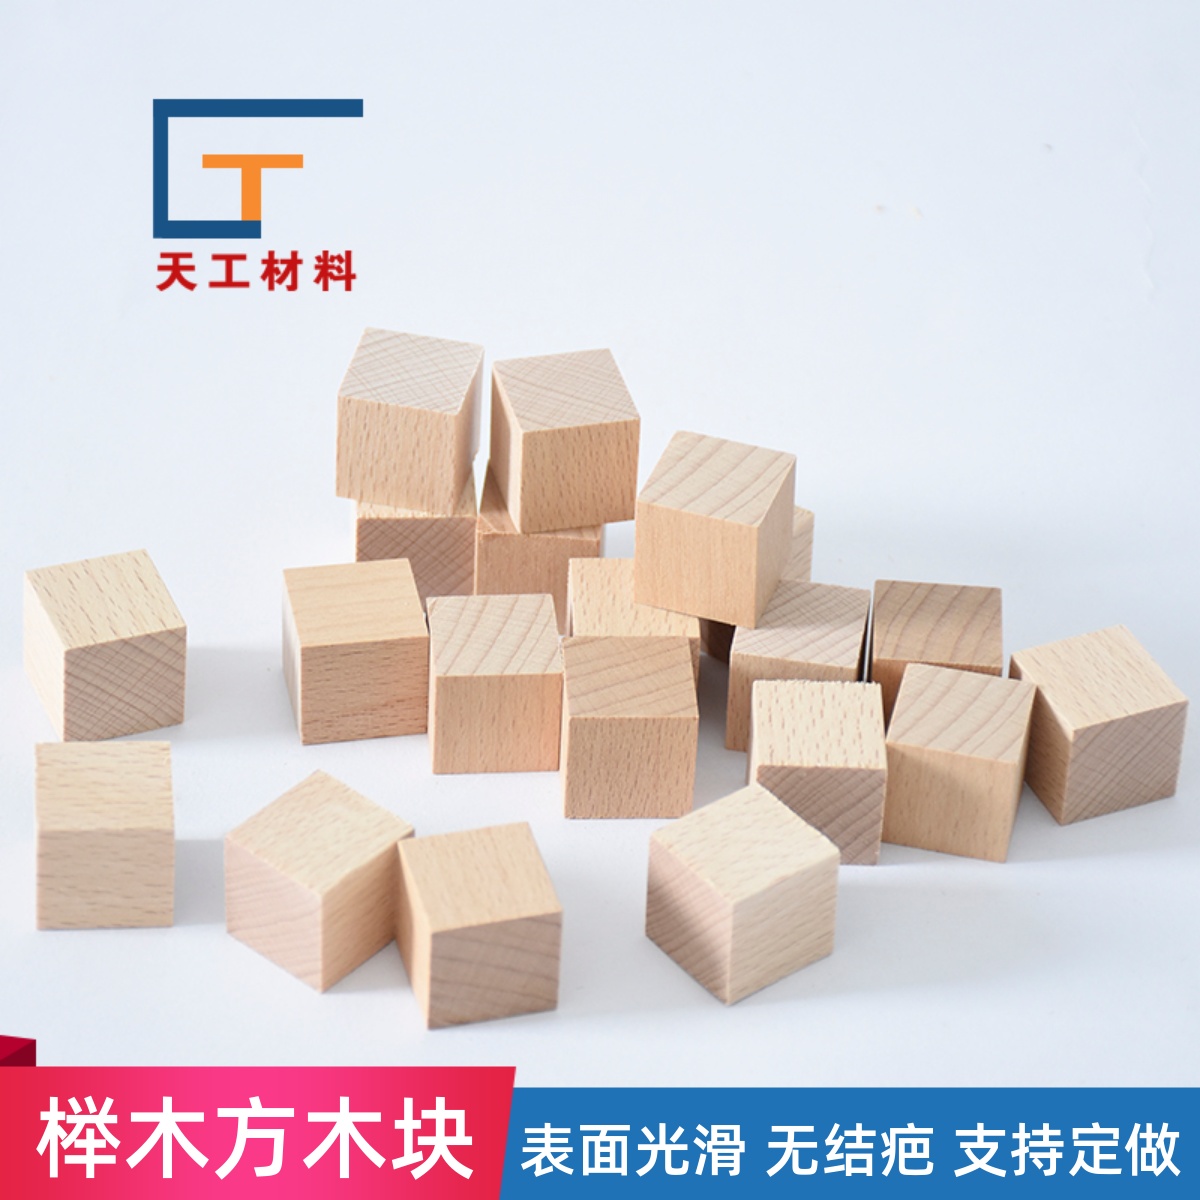 榉木方木块实木正方体小木块积木块DIY手工模型制作材料积木玩具